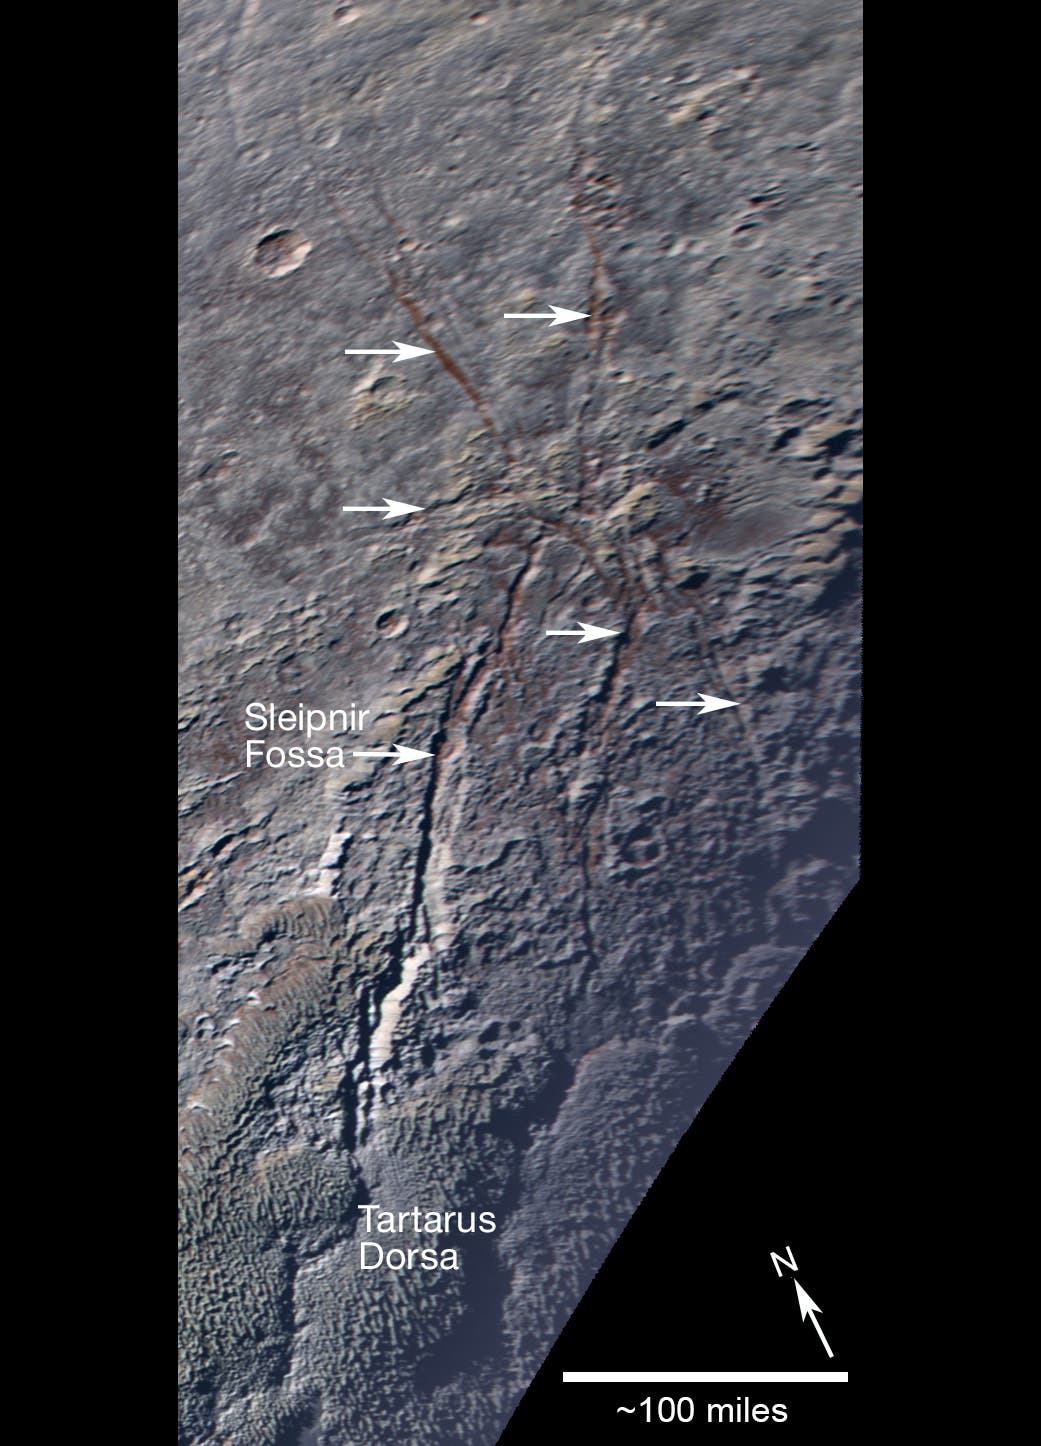 Verwerfungen in der Plutokruste (Aufnahme von New Horizons)